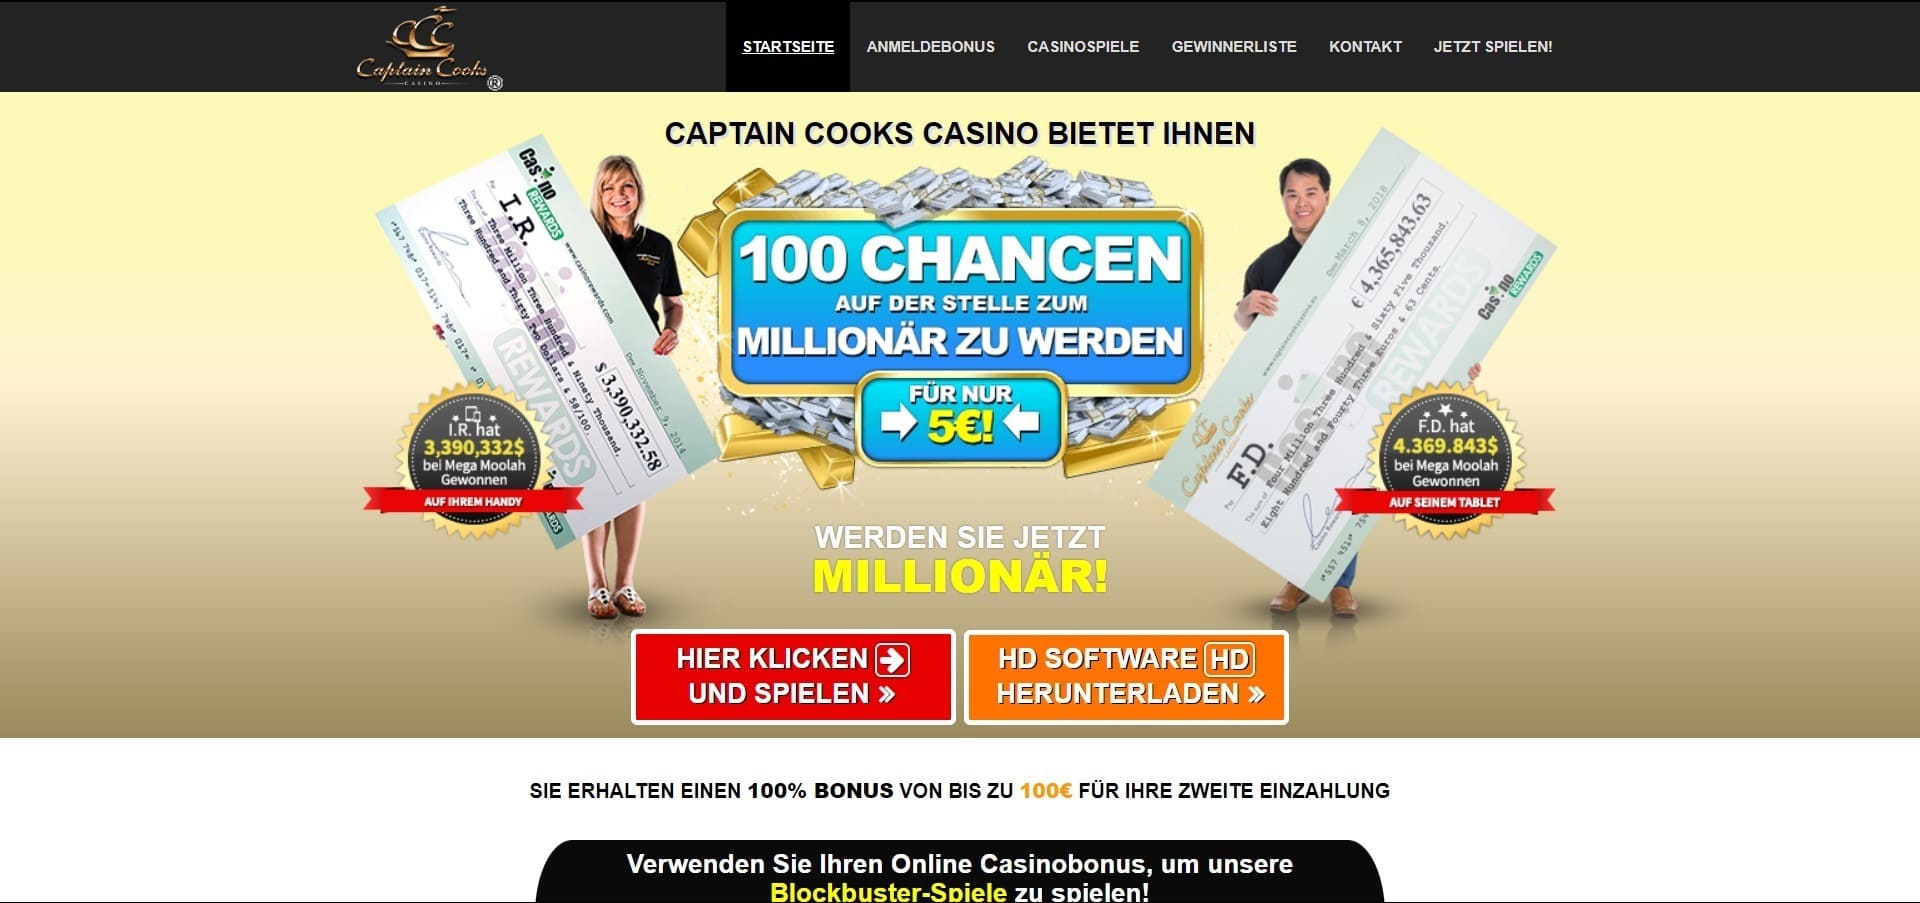 Offizielle Website der Captain Cooks Casino